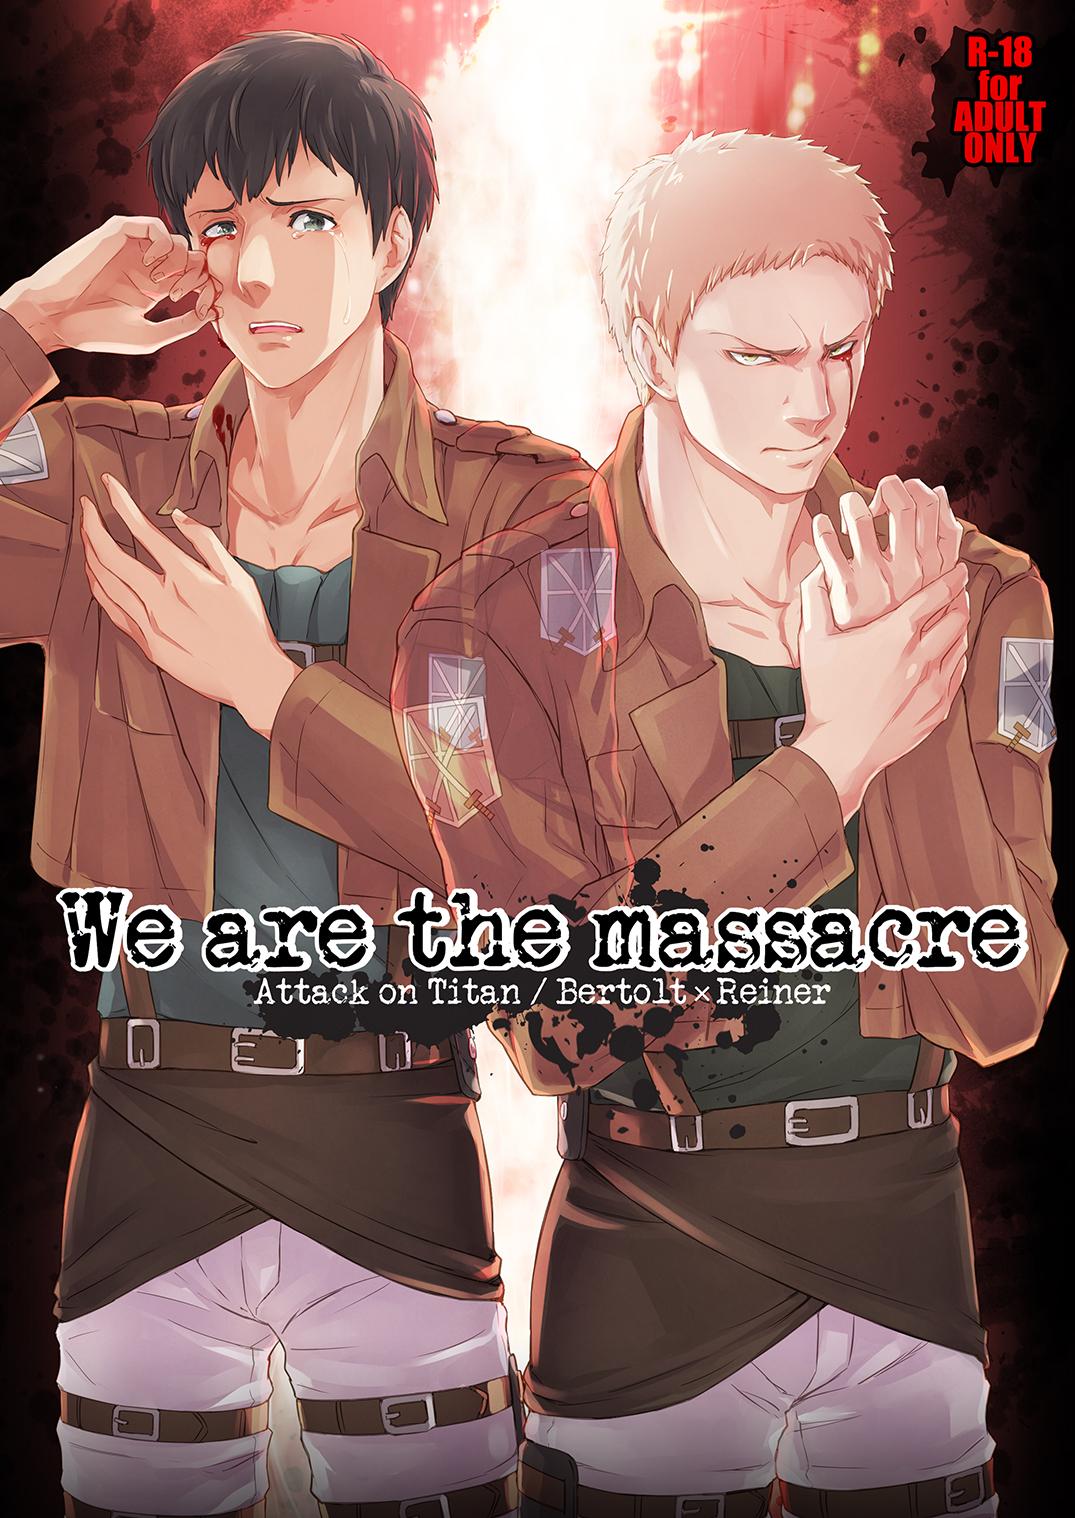 Attack on Titan - We are the massacre 0